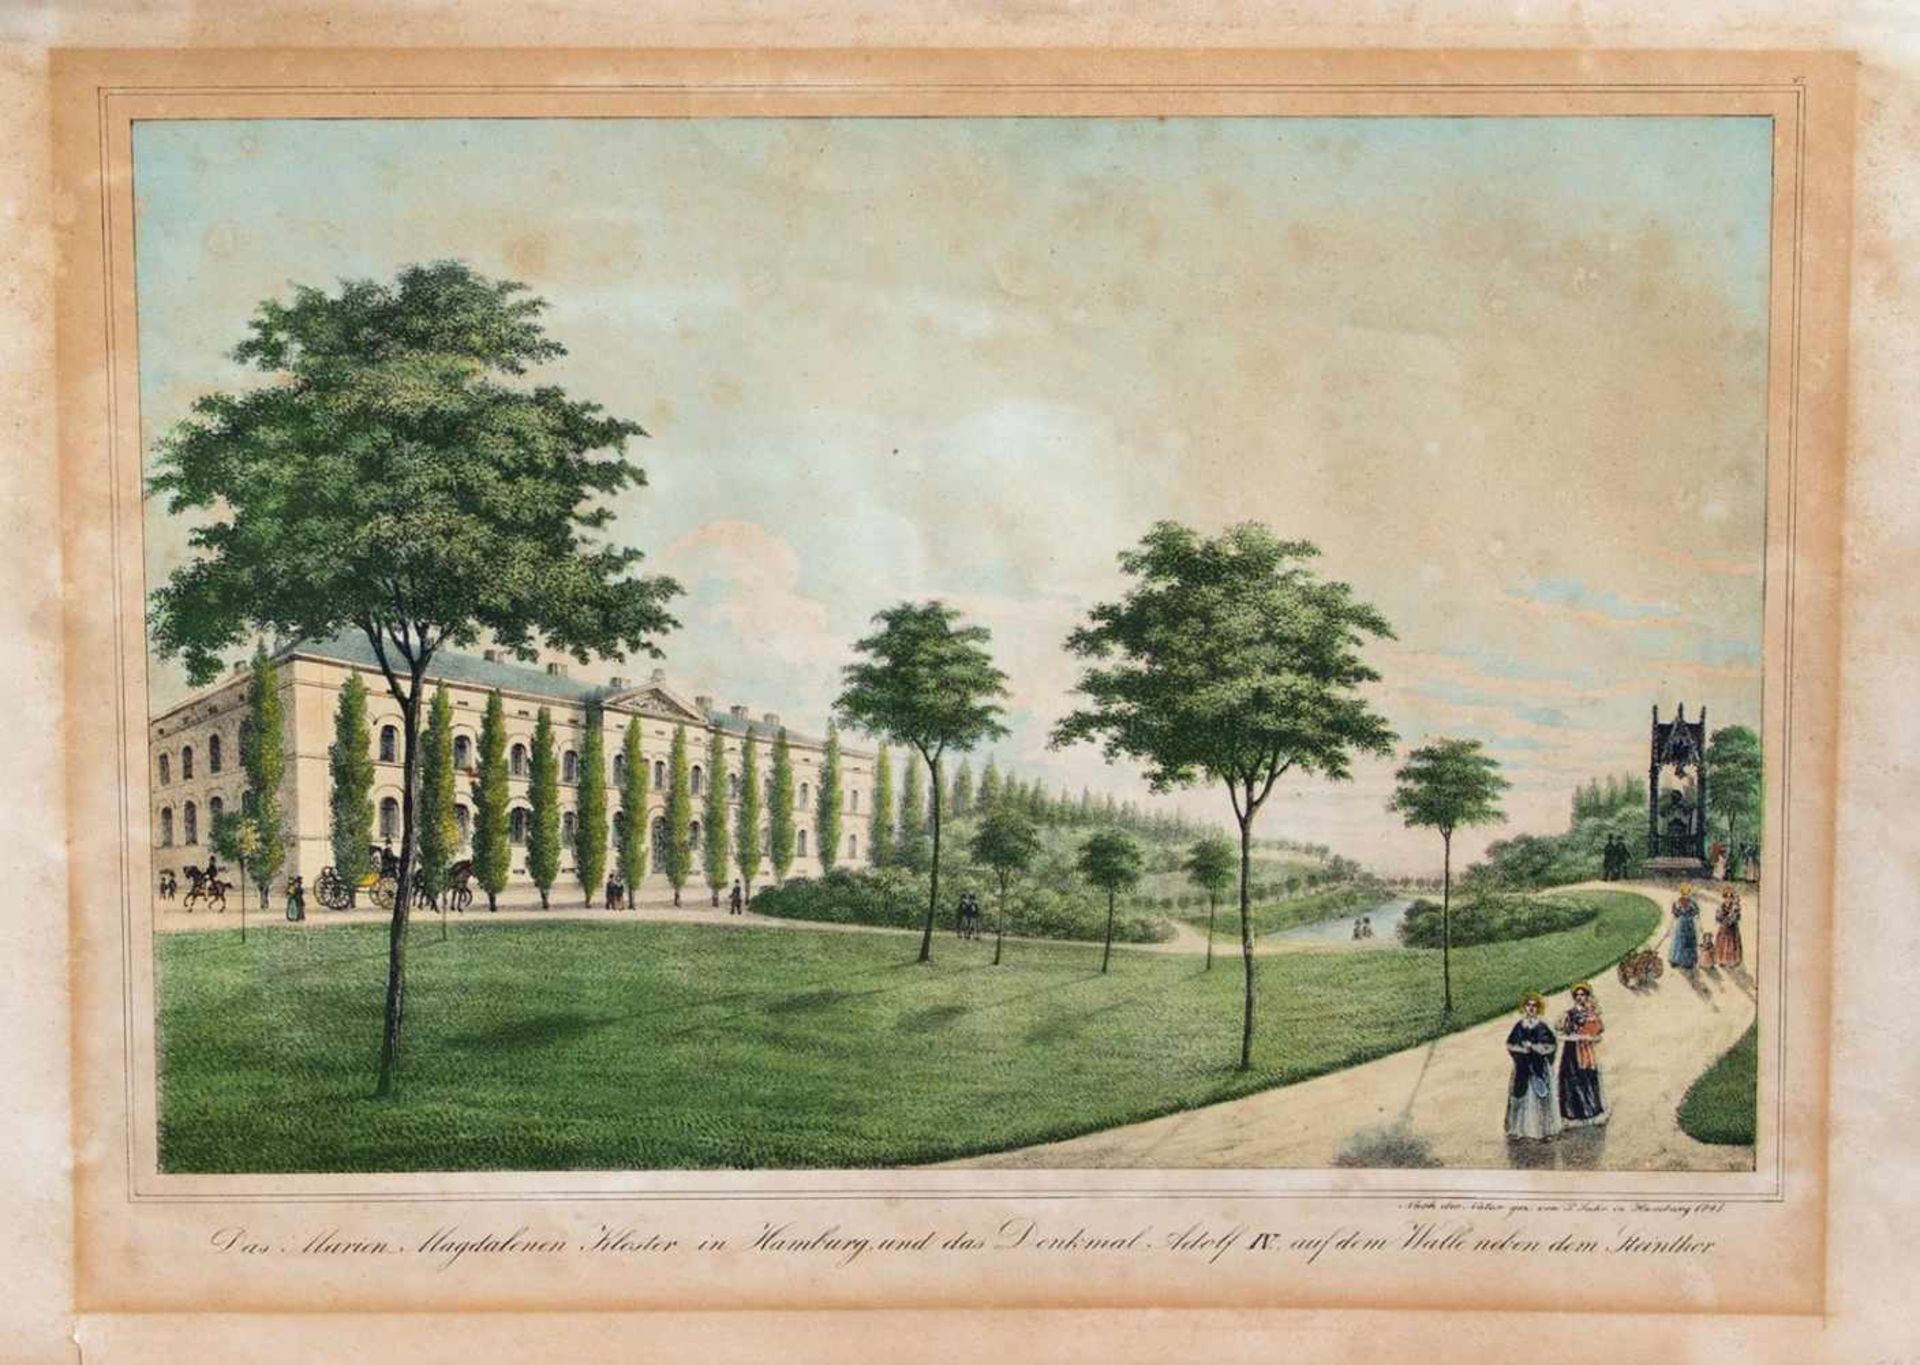 Peter Suhr (1788 - 1857, deutscher Lithograf, Zeichner u. Radierer) "Das Marien Magdalenen Kloster